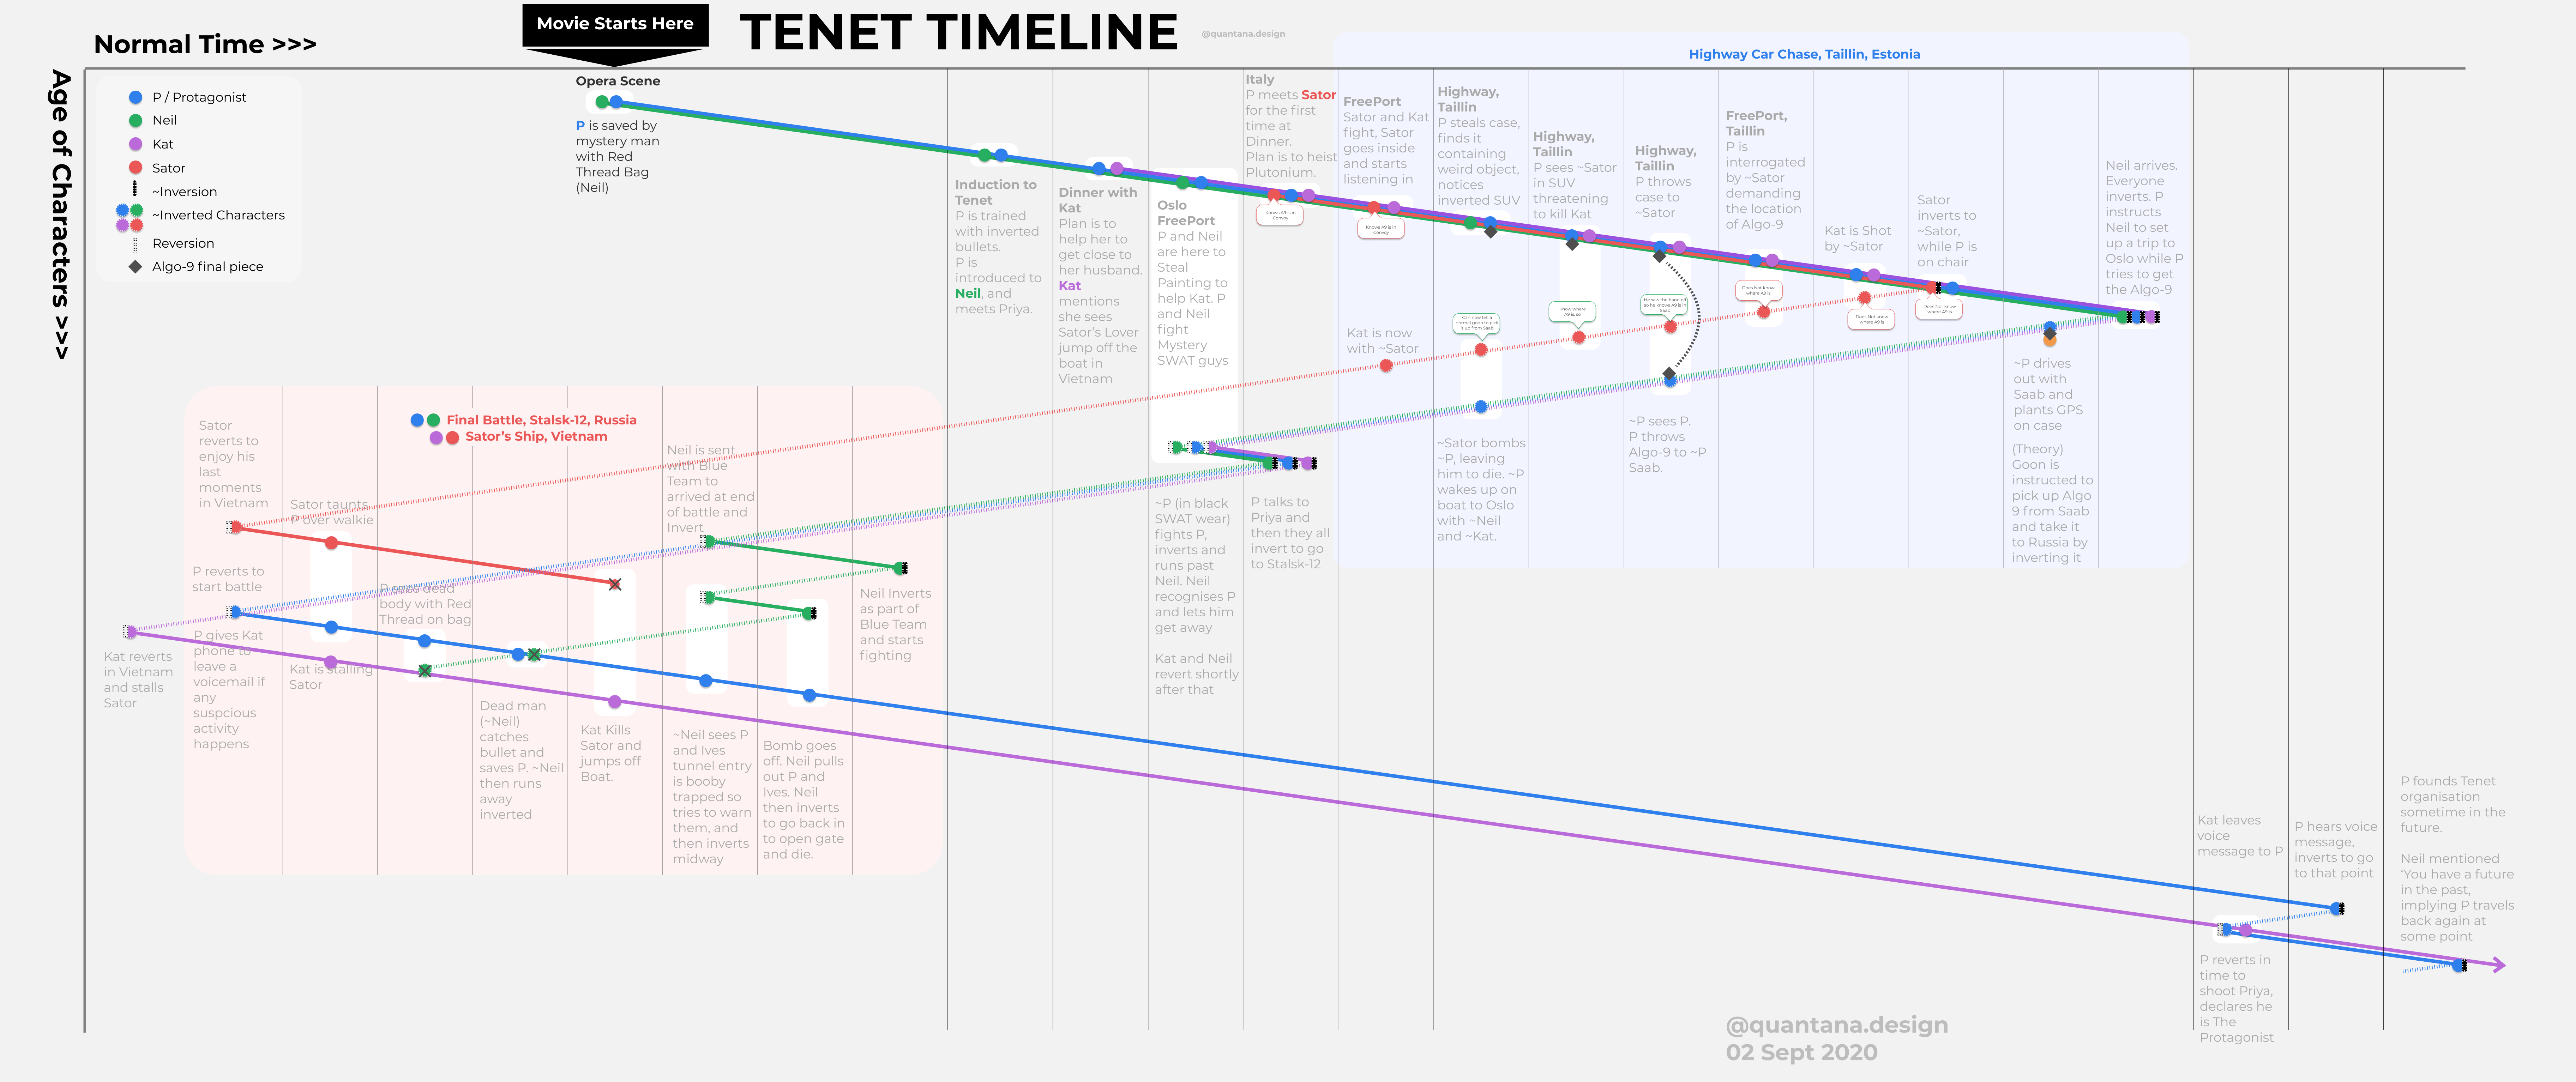 Tenet Timeline by Reddit user Pesteringneedles